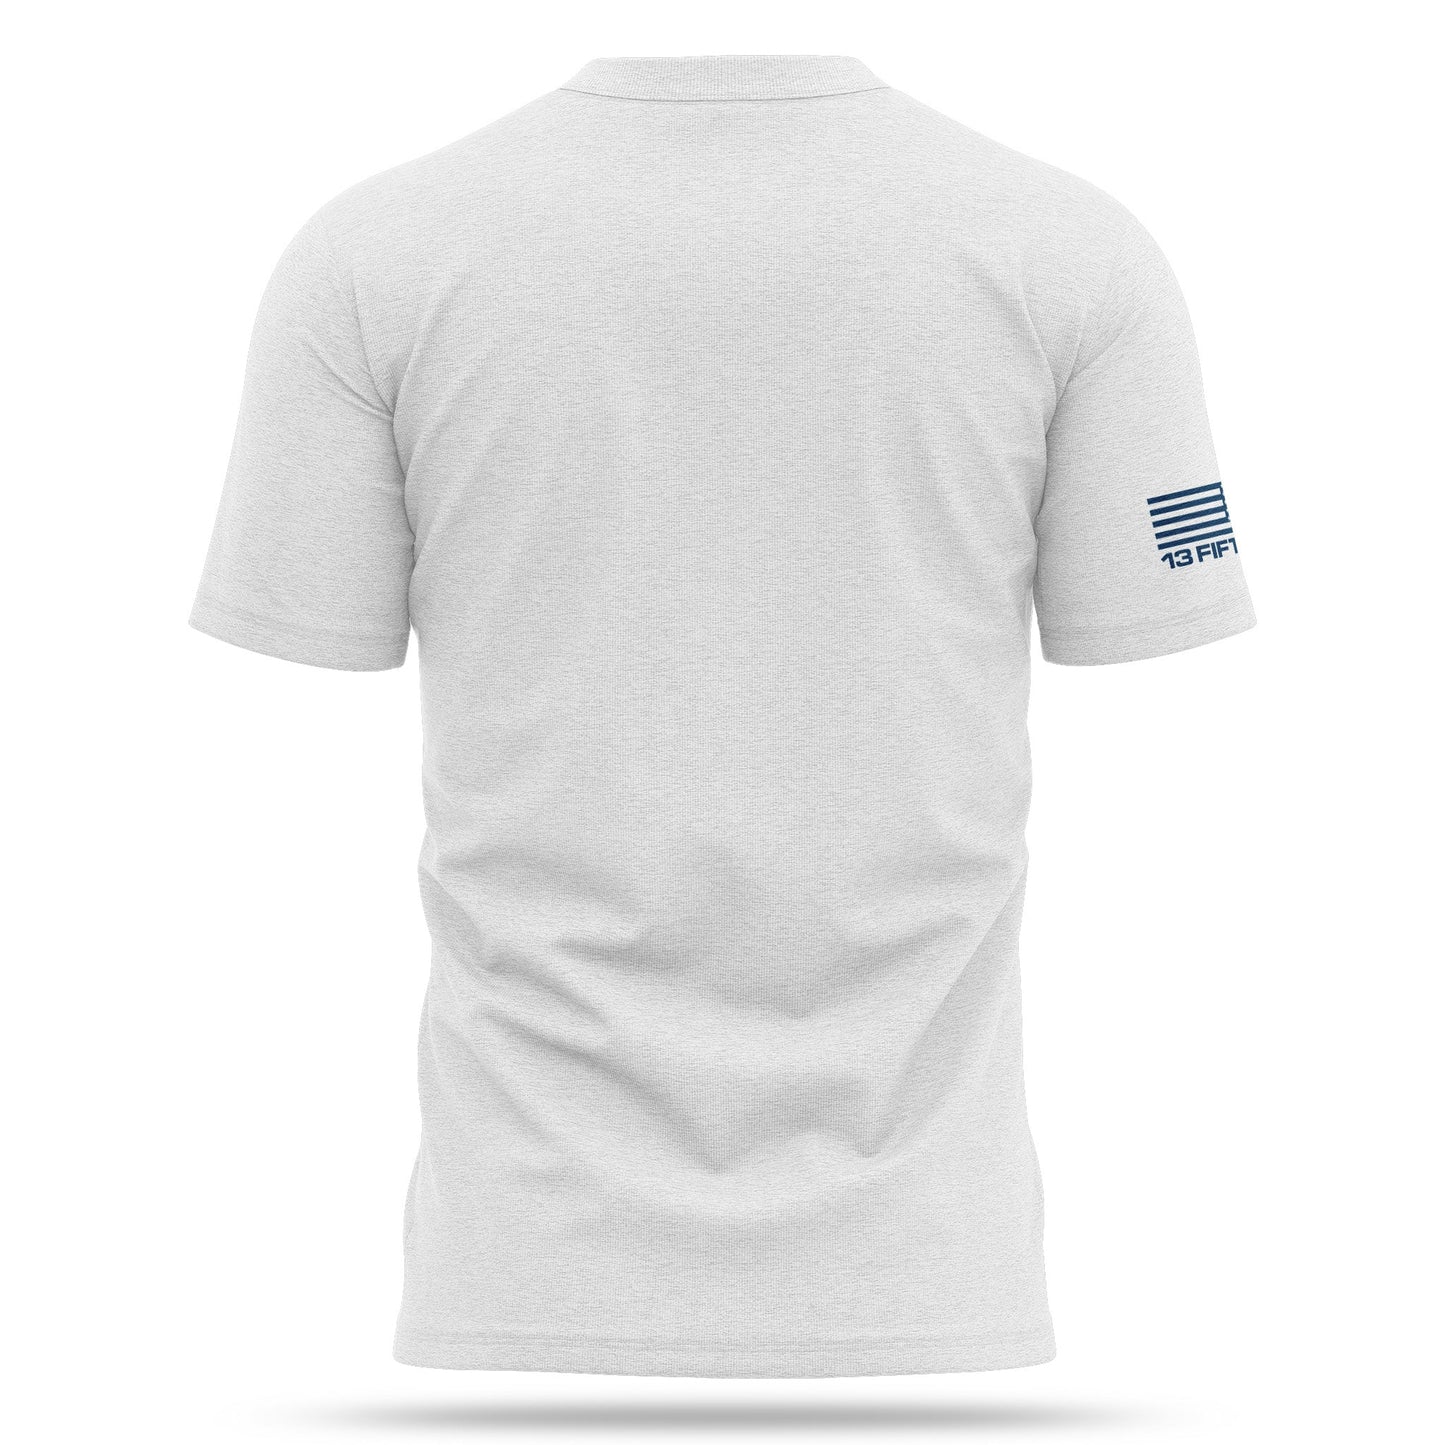 [2A USA] Cotton Blend Shirt [WHT/BLU]-13 Fifty Apparel